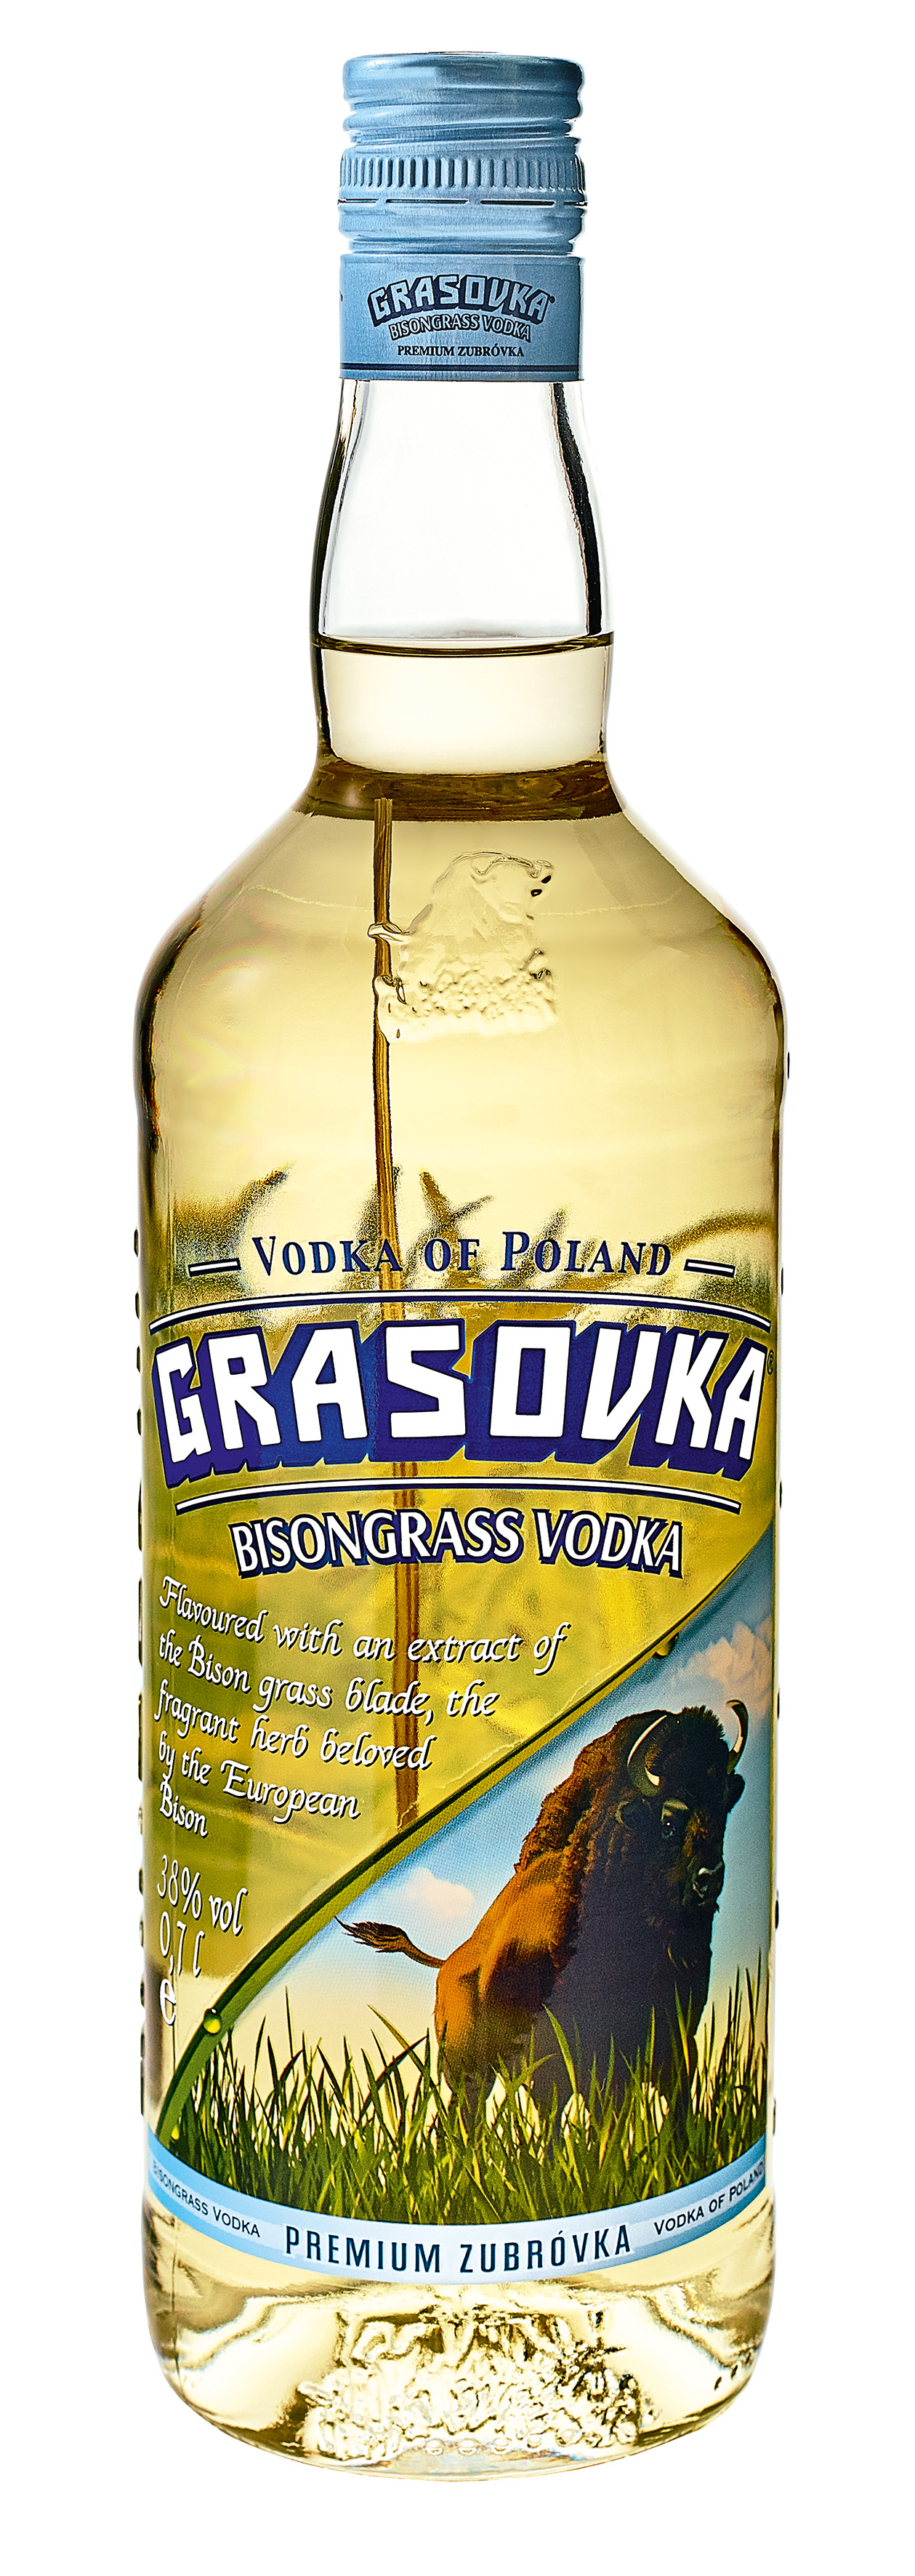 Grasovka Bisongrass Vodka | l 38 | % 0,5 vol